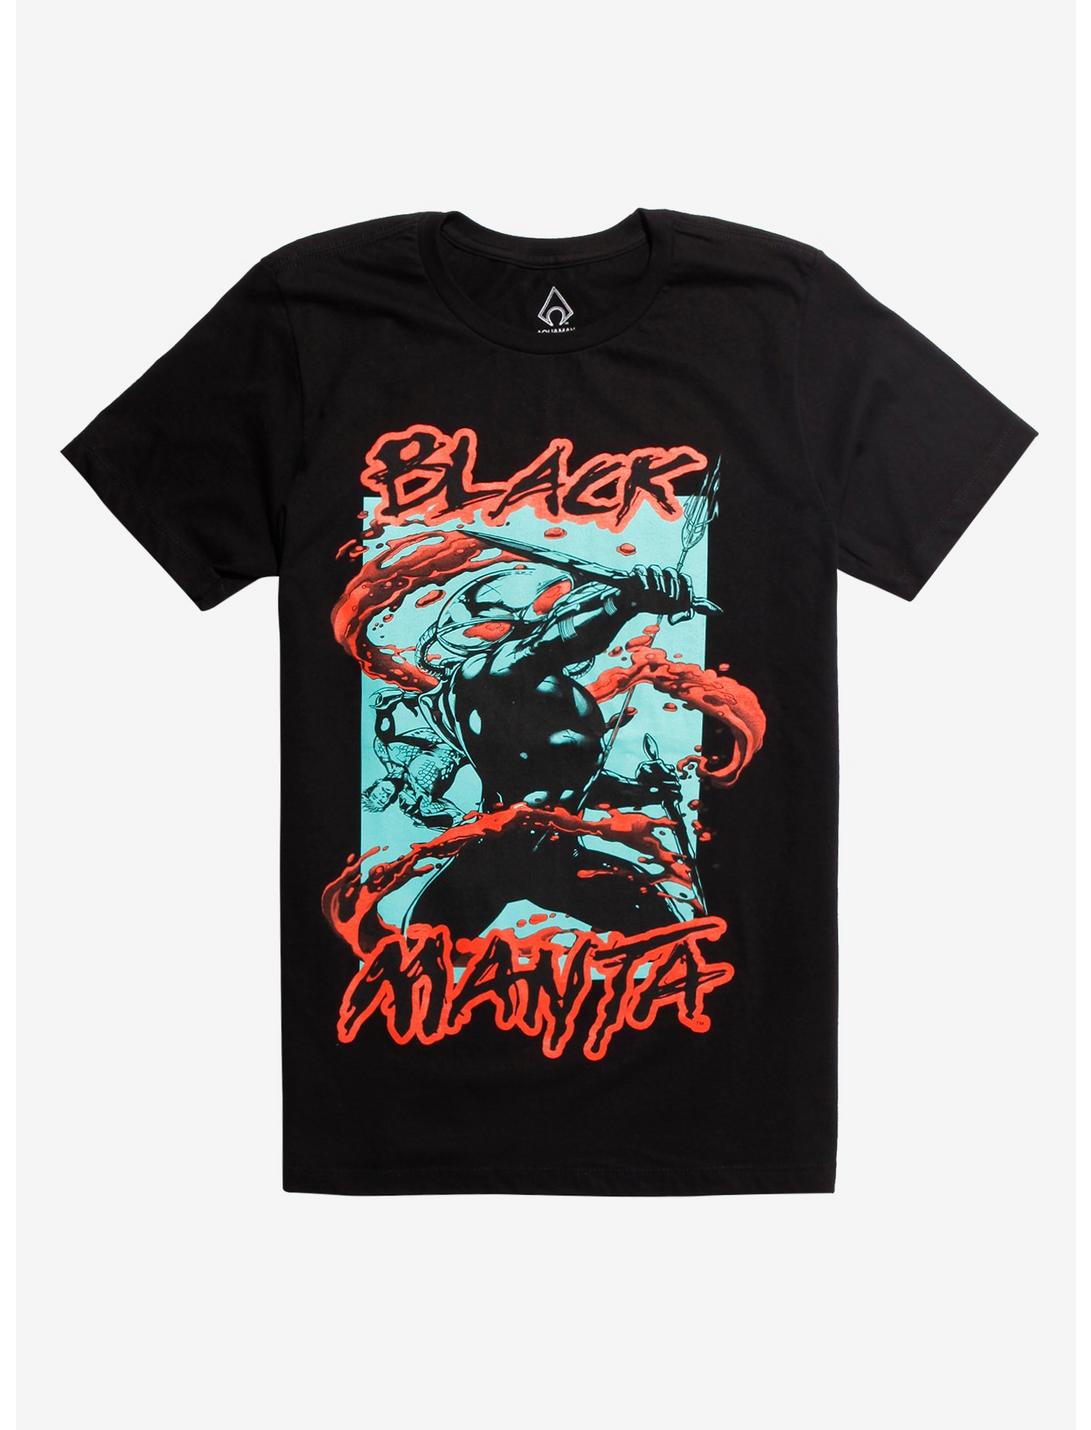 Aquaman Black Manta T-Shirt, BLACK, hi-res